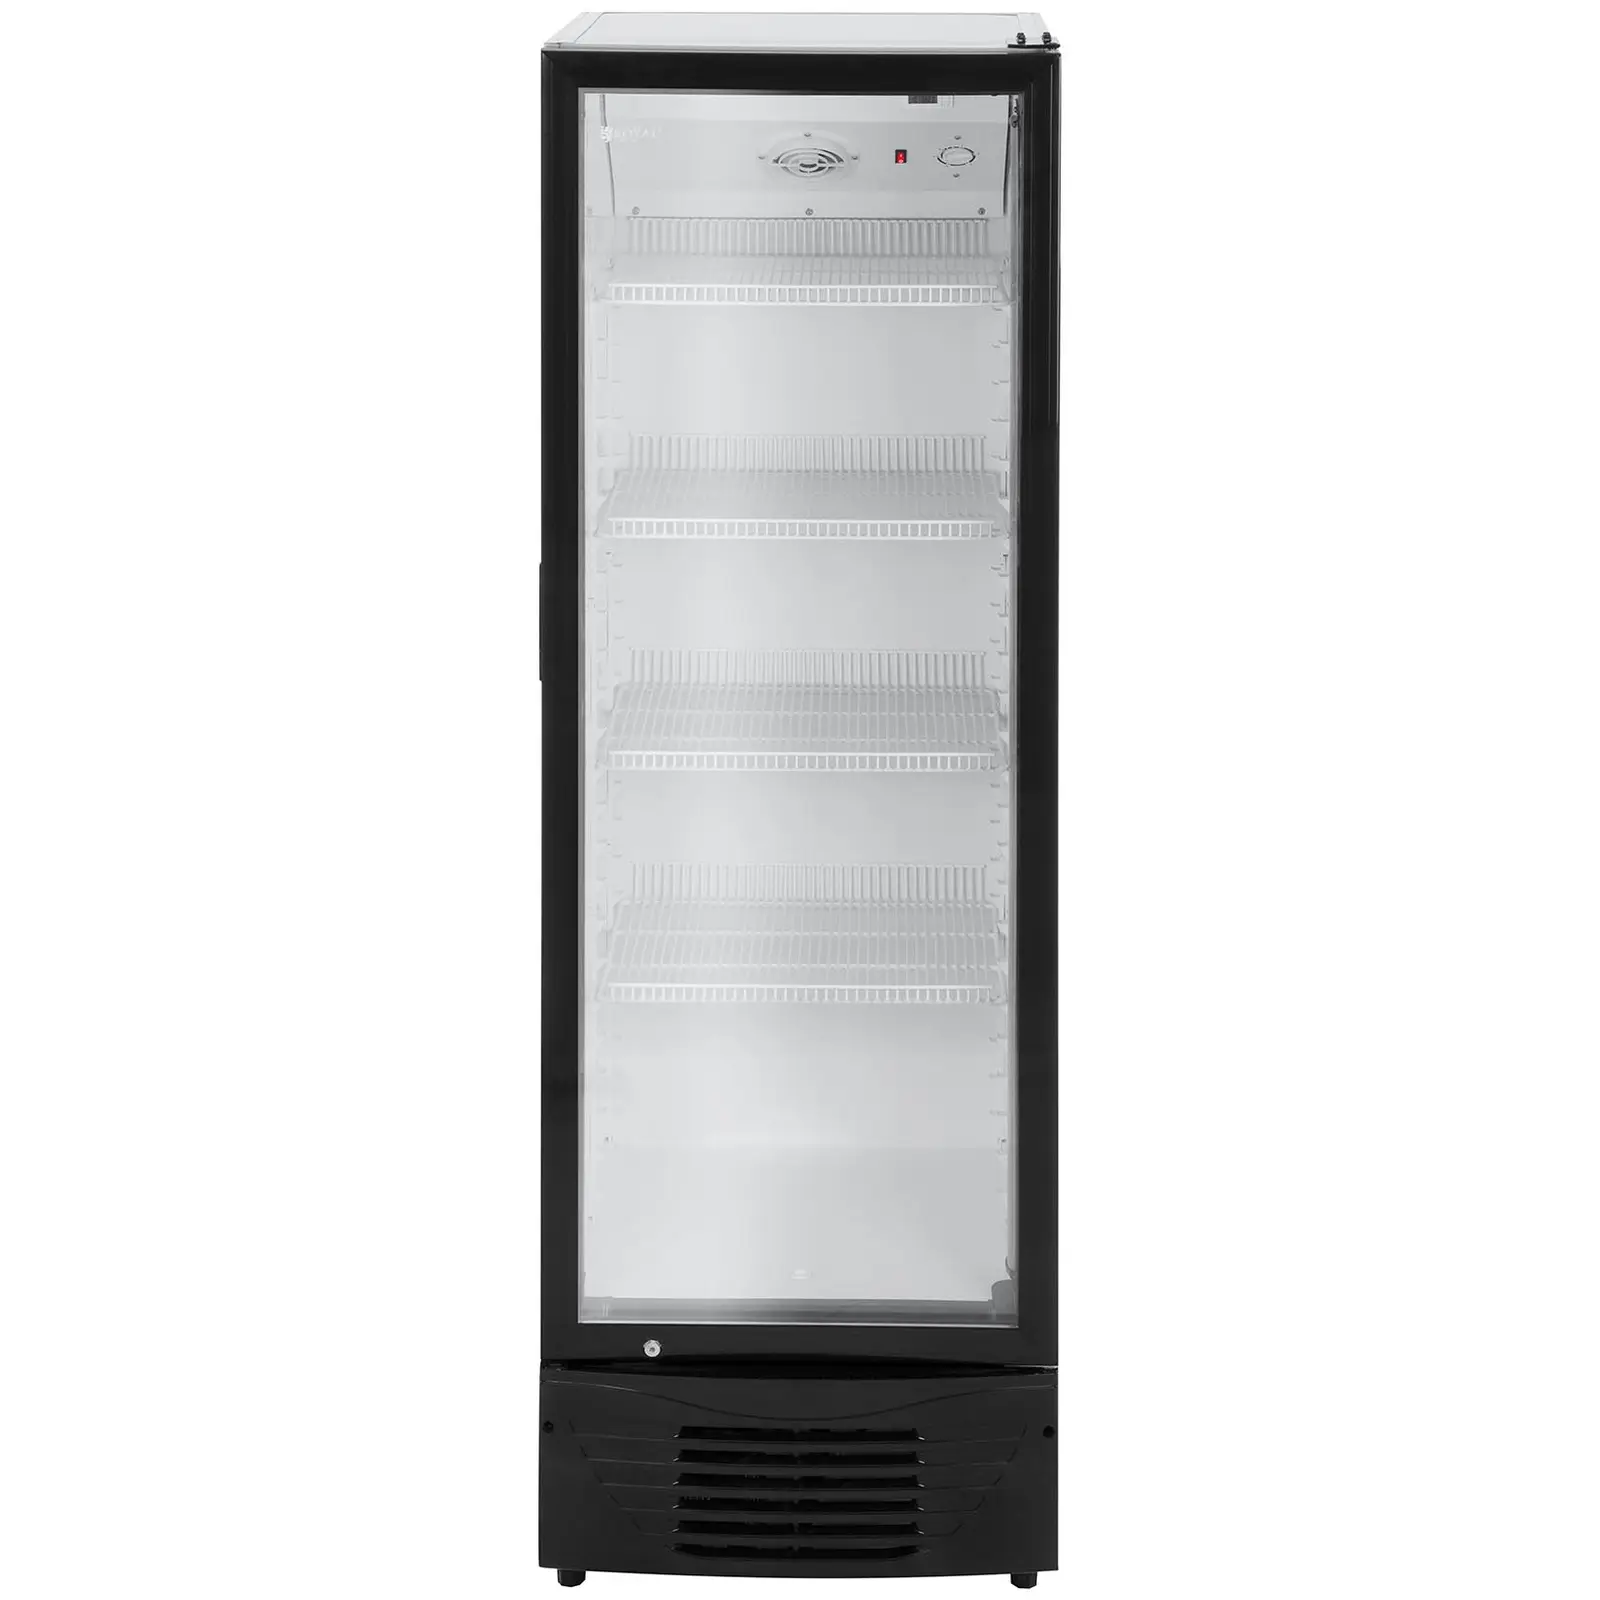 B-Ware Flaschenkühlschrank - 320 L - LED - schwarzer Rahmen